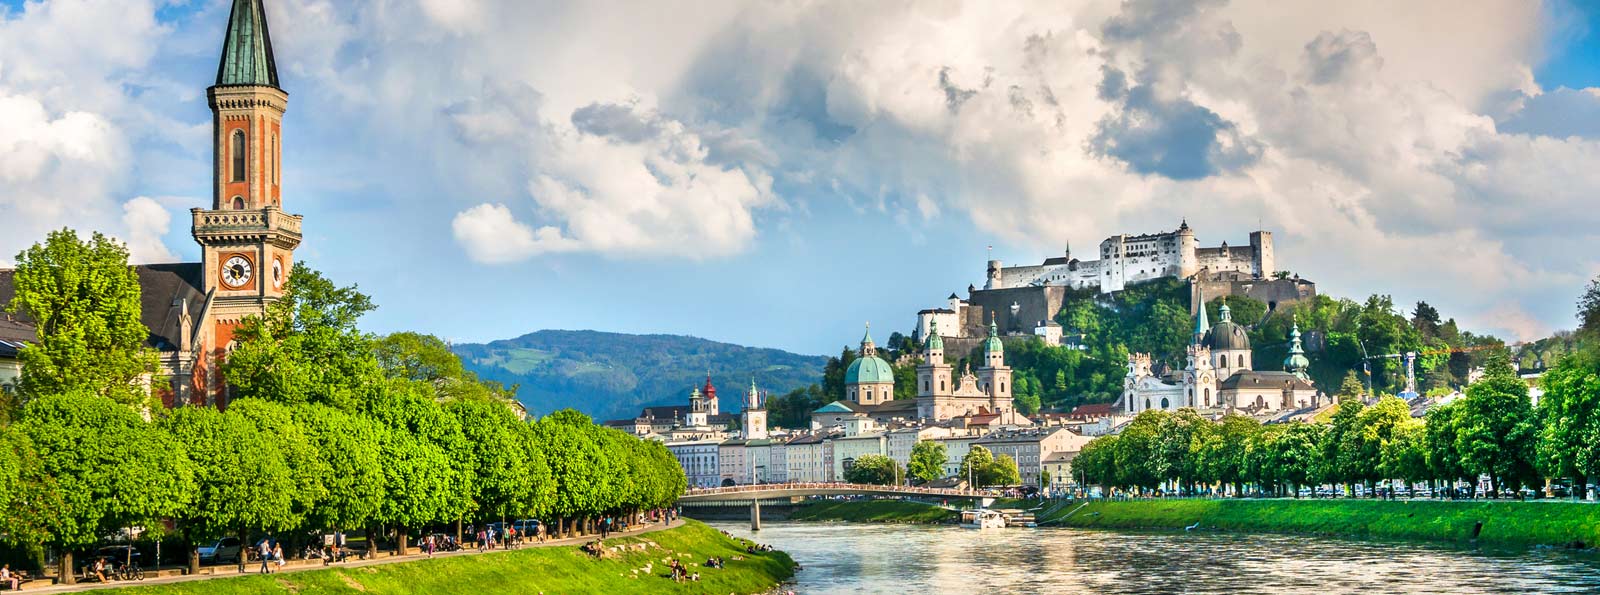 Excursión a Salzburgo desde Múnich